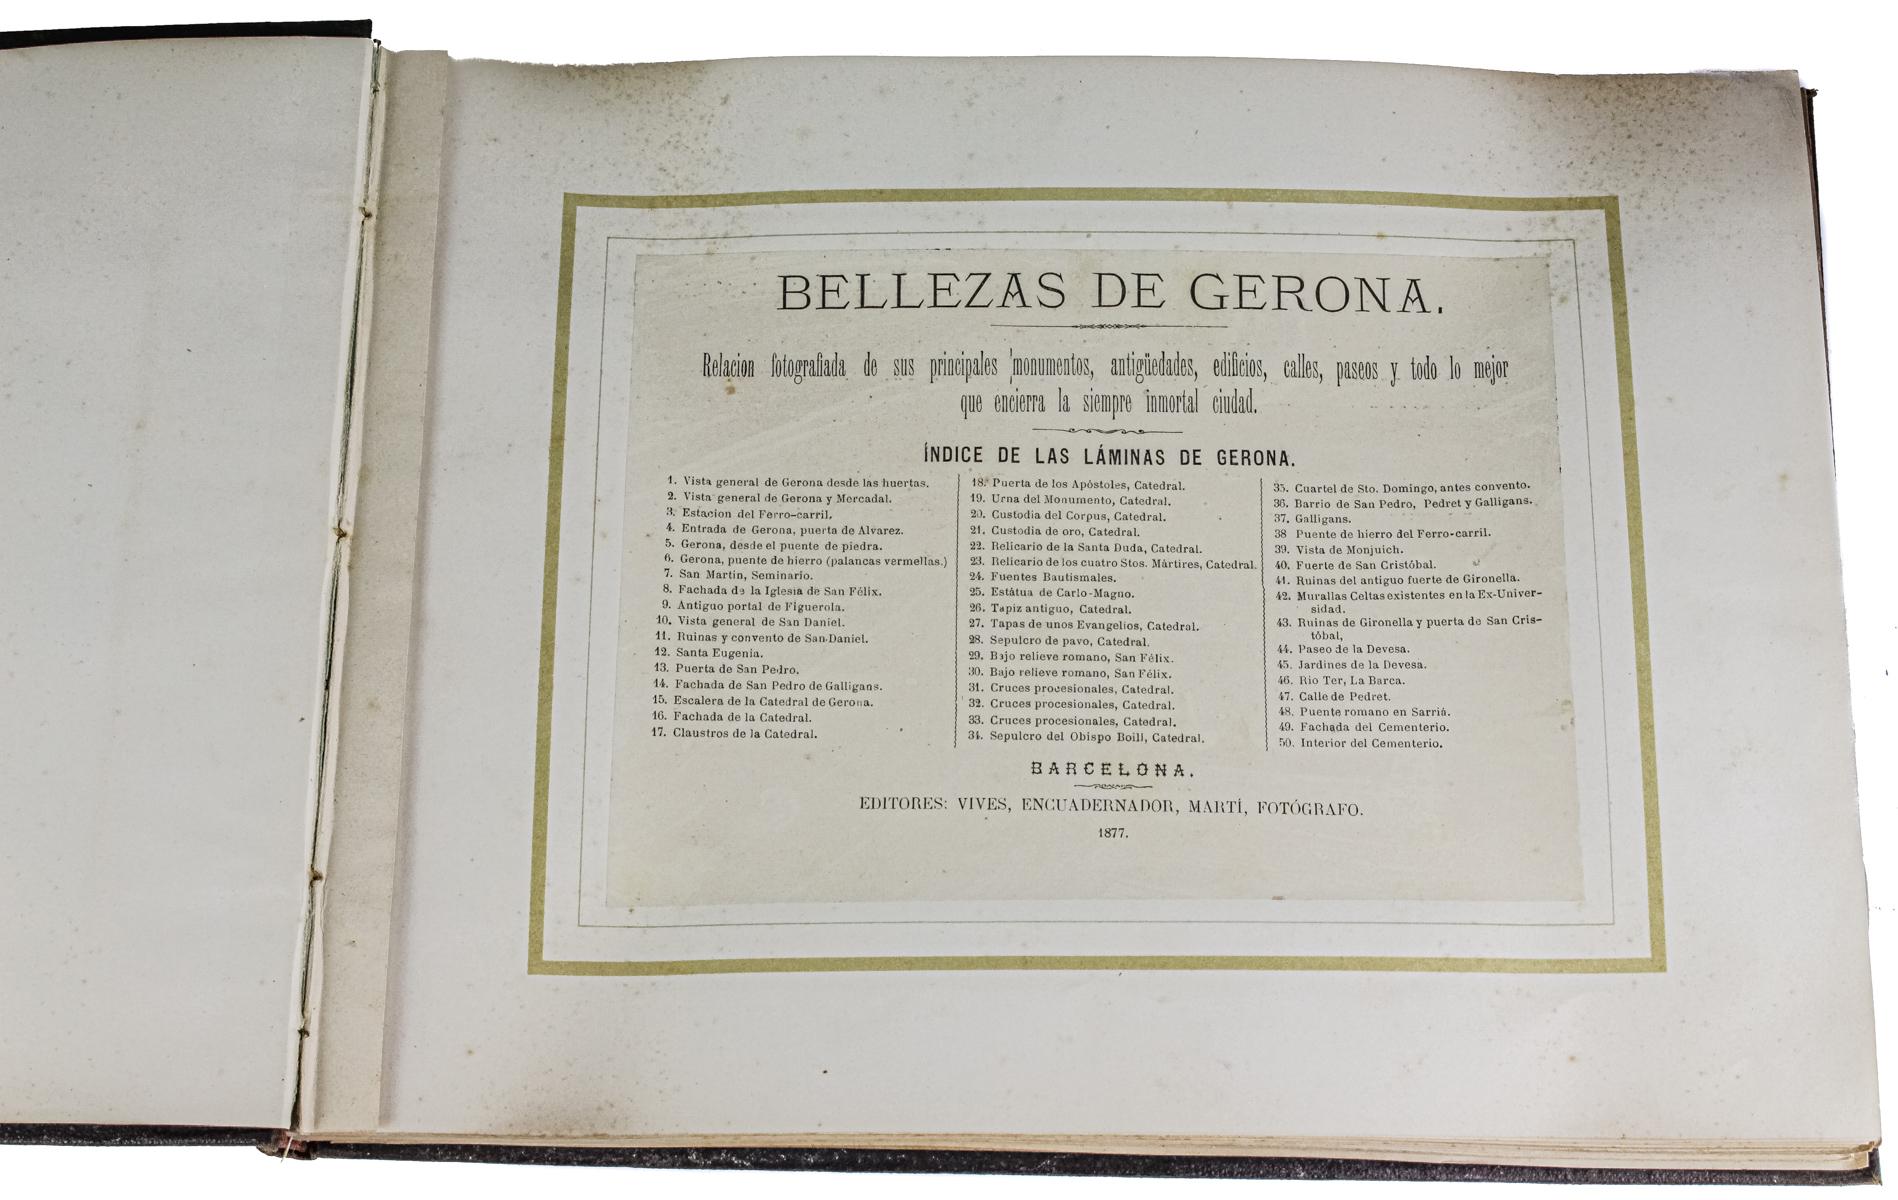 "BELLEZAS DE GERONA"